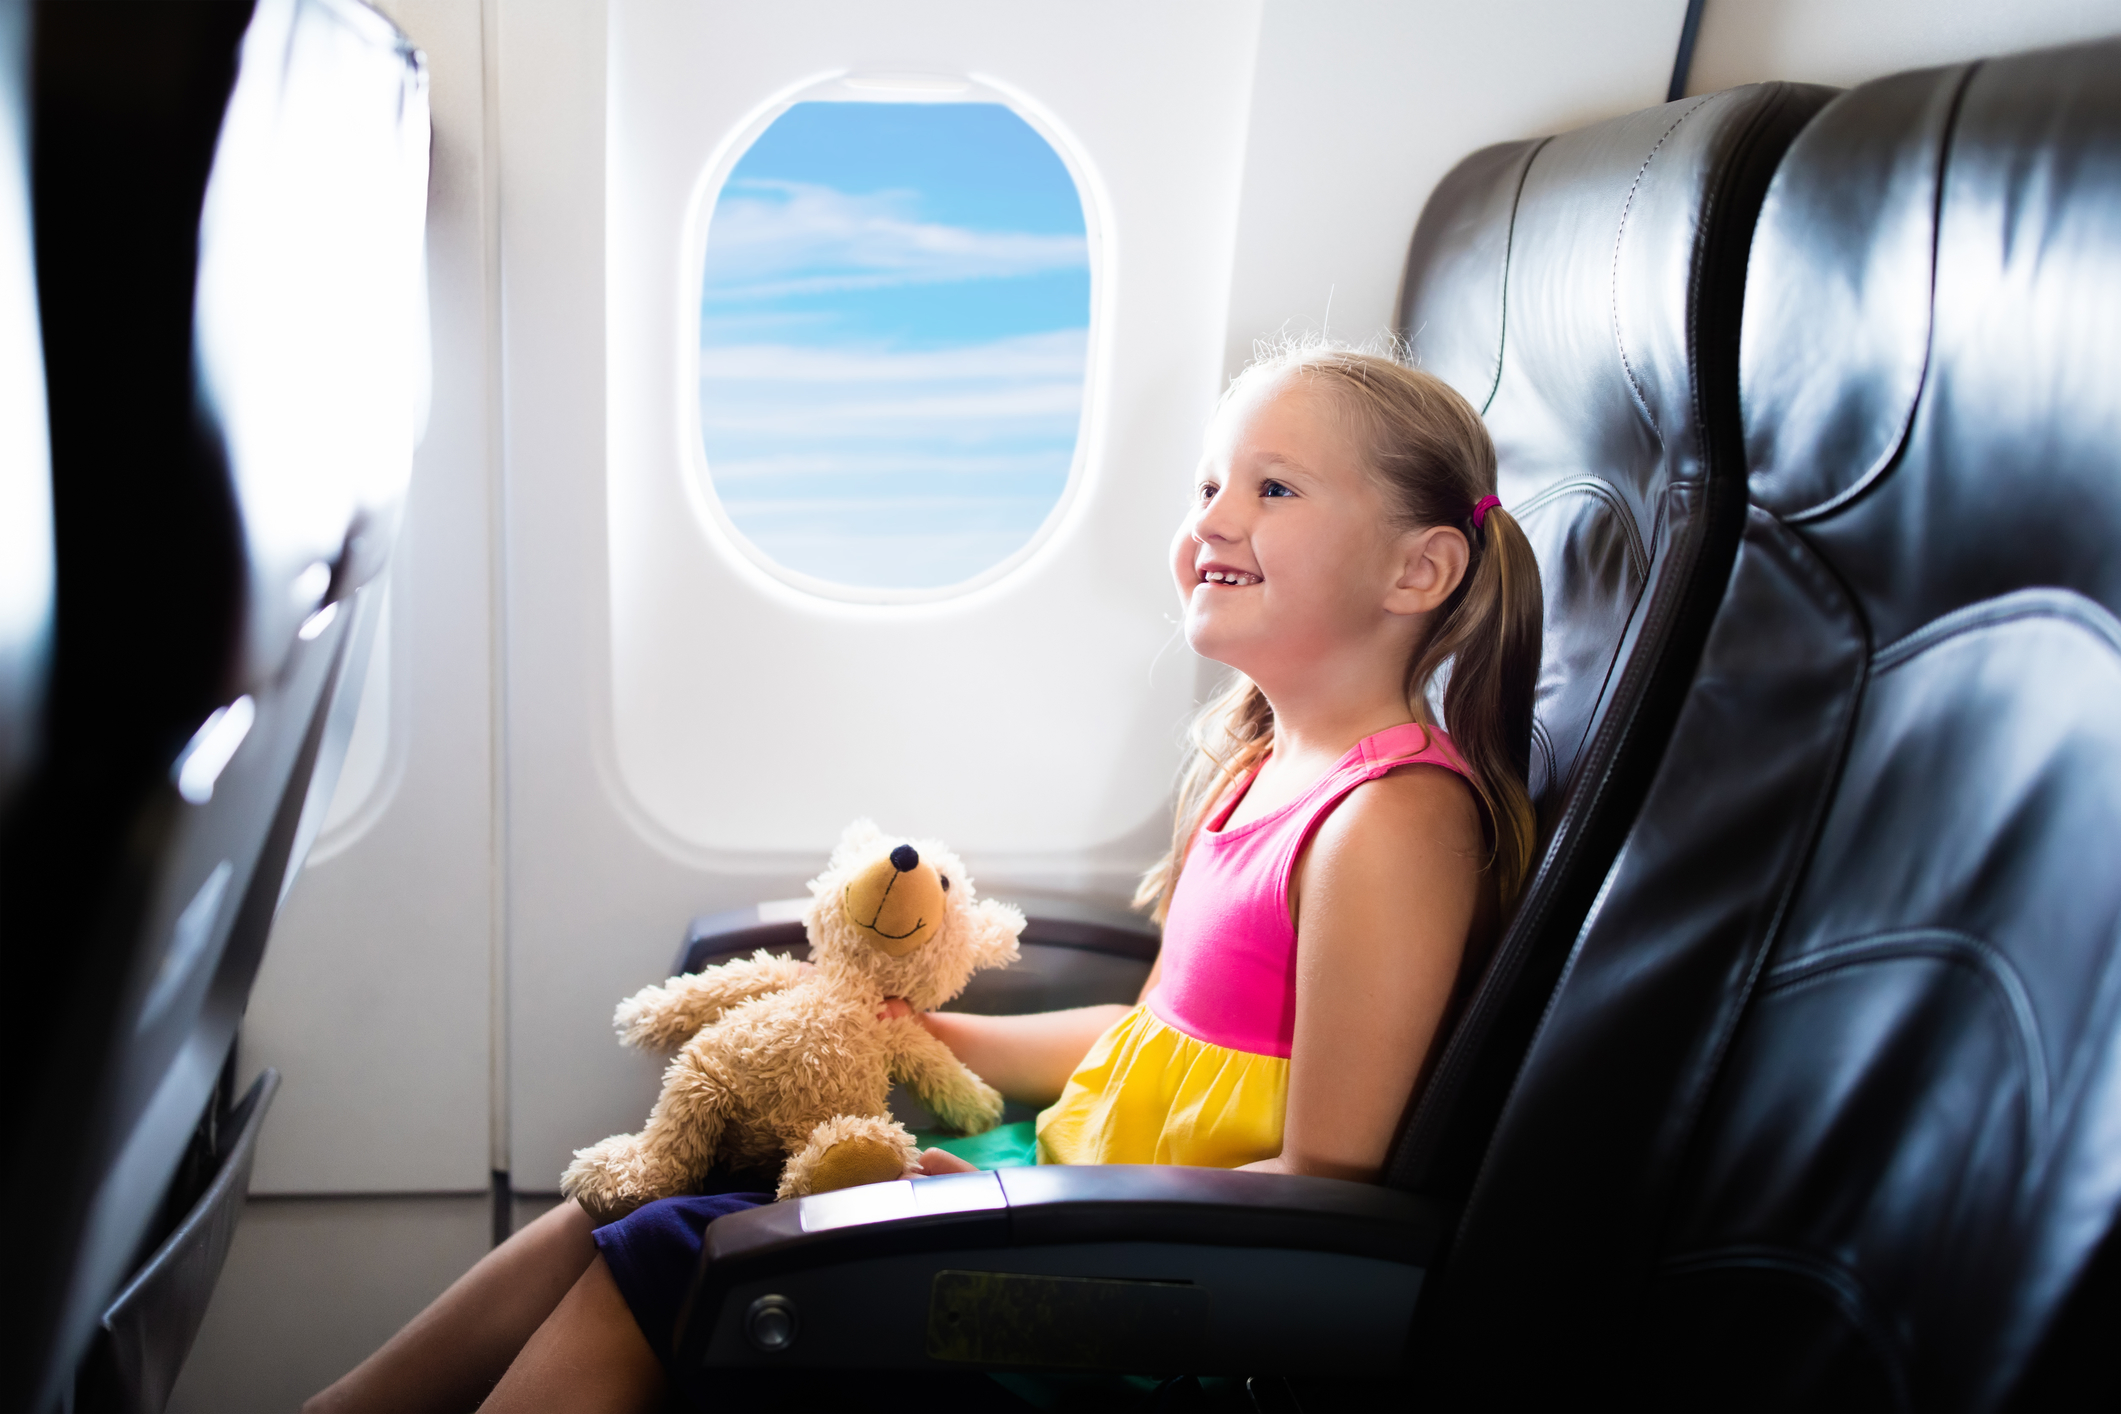 Авиакомпаниям запретили разделять родителей с детьми